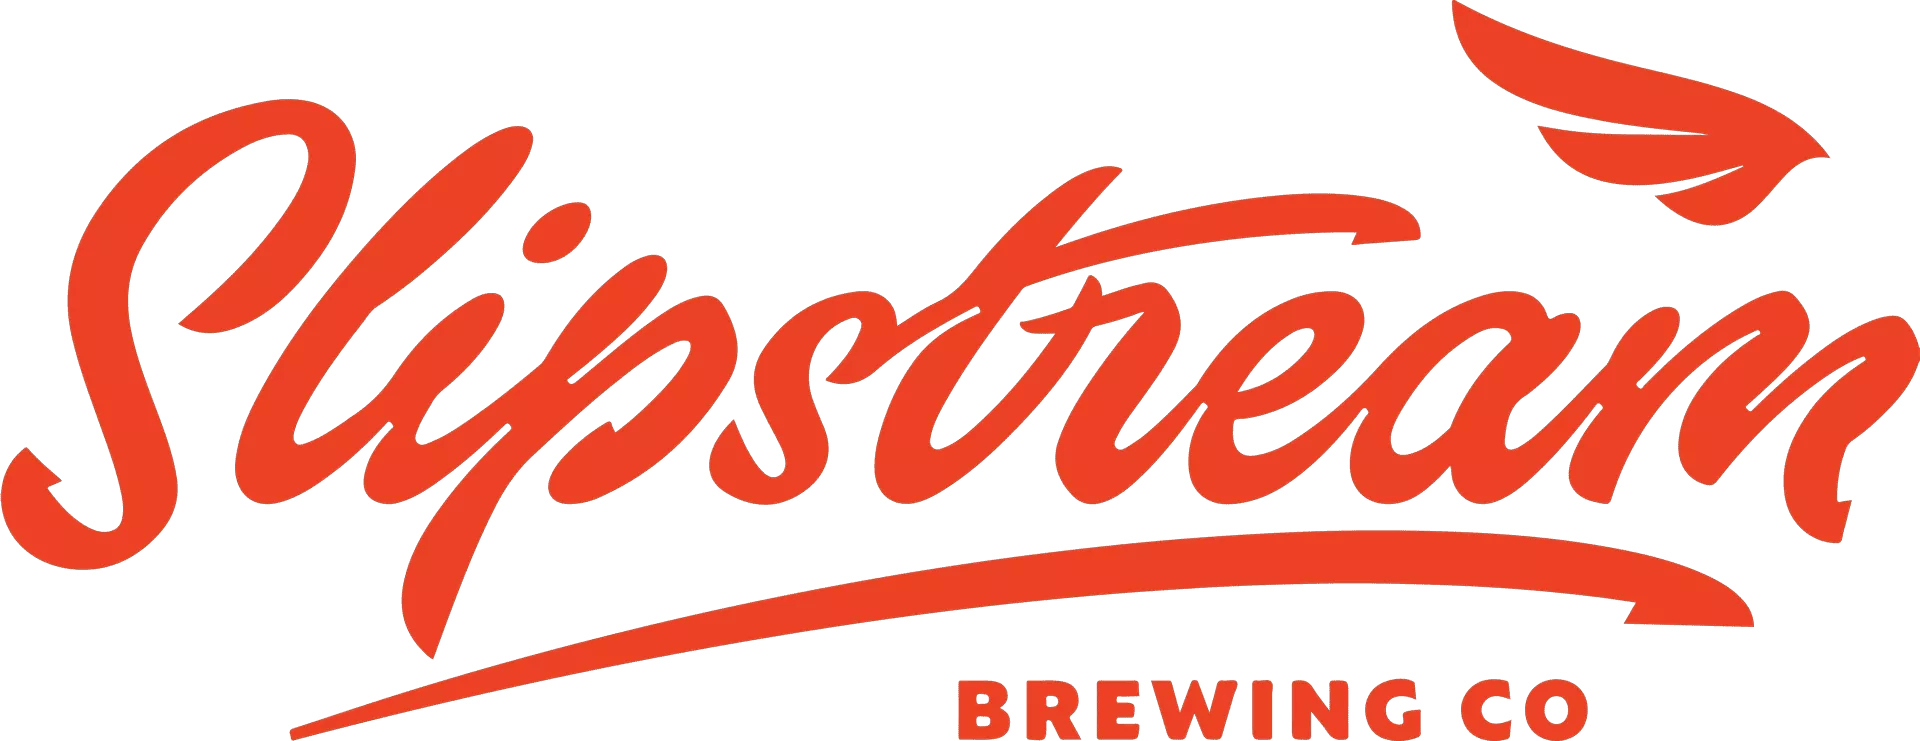 Logo der Slipstream-Brauerei